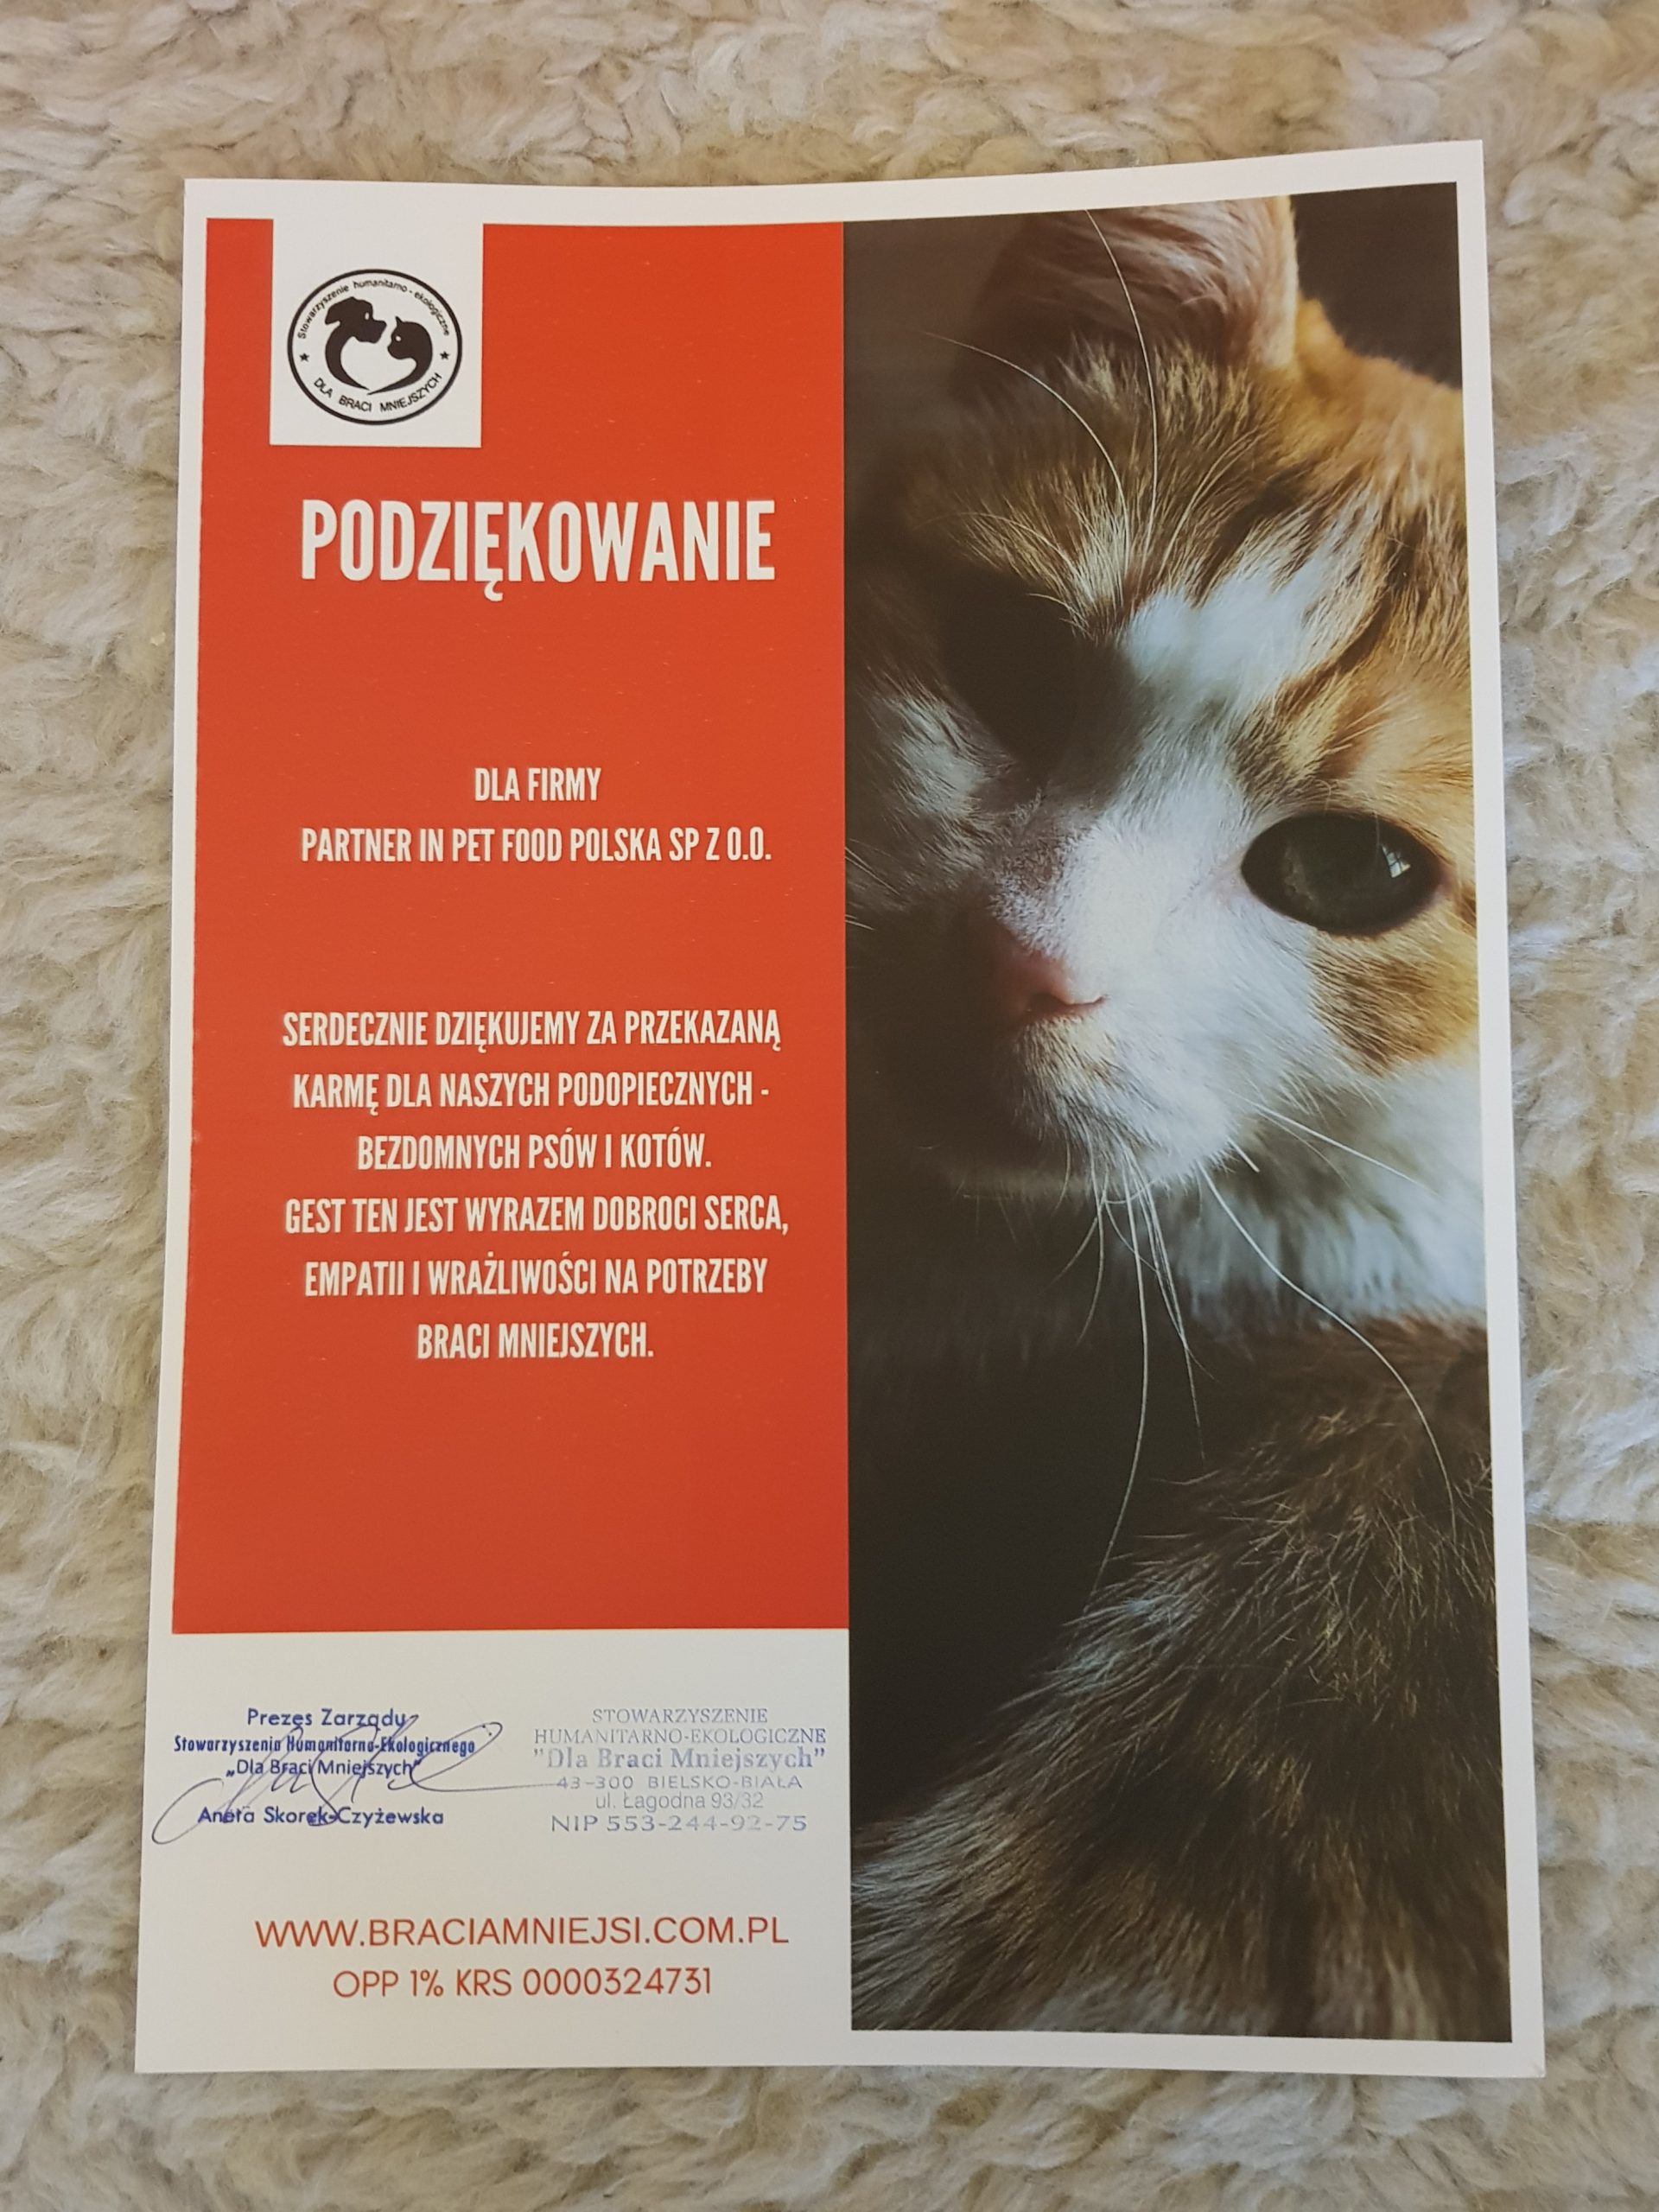 Podziękowania dla Partner in Pet Food Polska Sp. z o.o. za przekazaną karmę